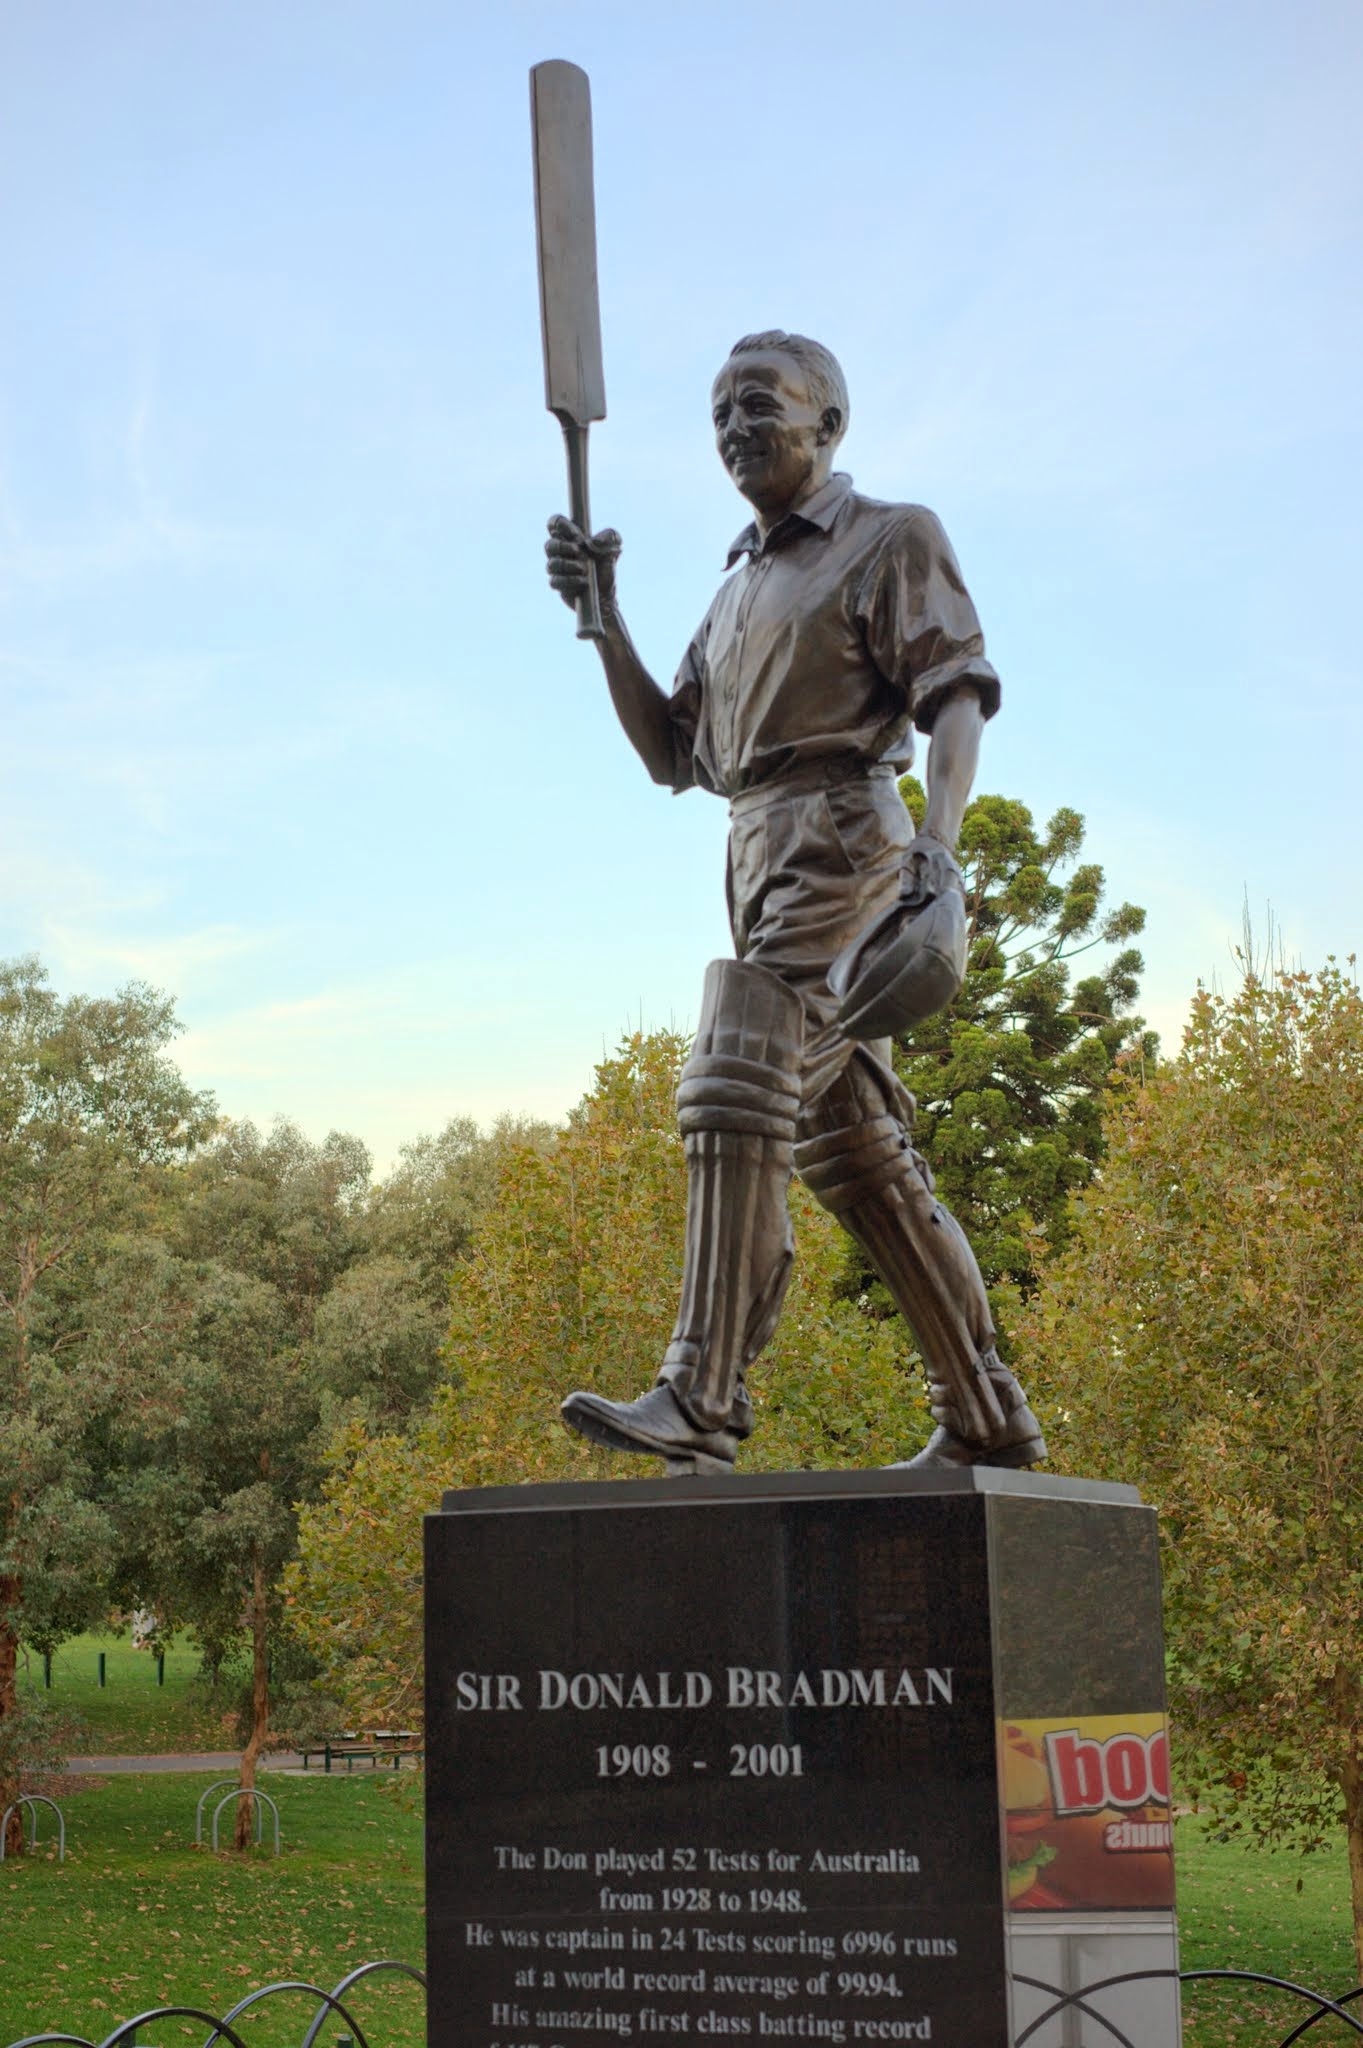 a statue of a man holding a bat